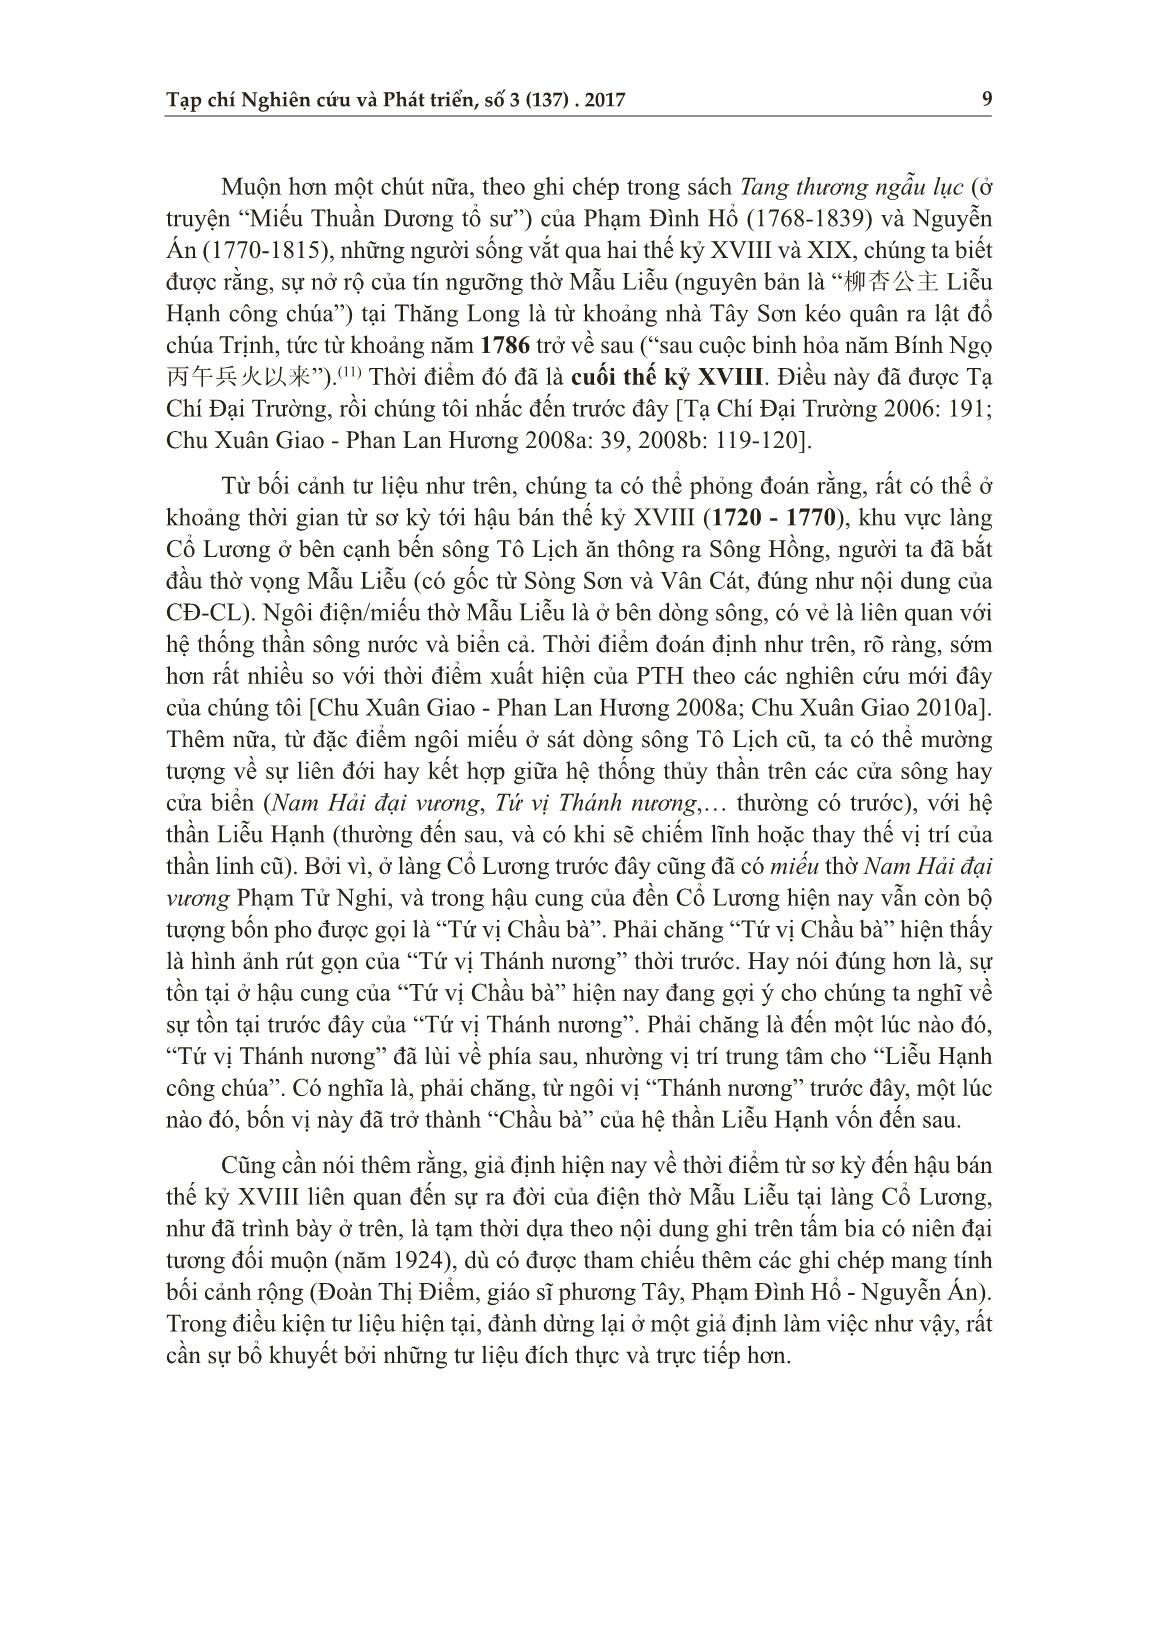 Hình ảnh Mẫu Liễu và phong trào dân tộc đầu thế kỷ XX: Trường hợp trí thức khoa bảng Trần Tán Bình với câu đối dâng năm 1922 cho đền Cổ Lương trang 7